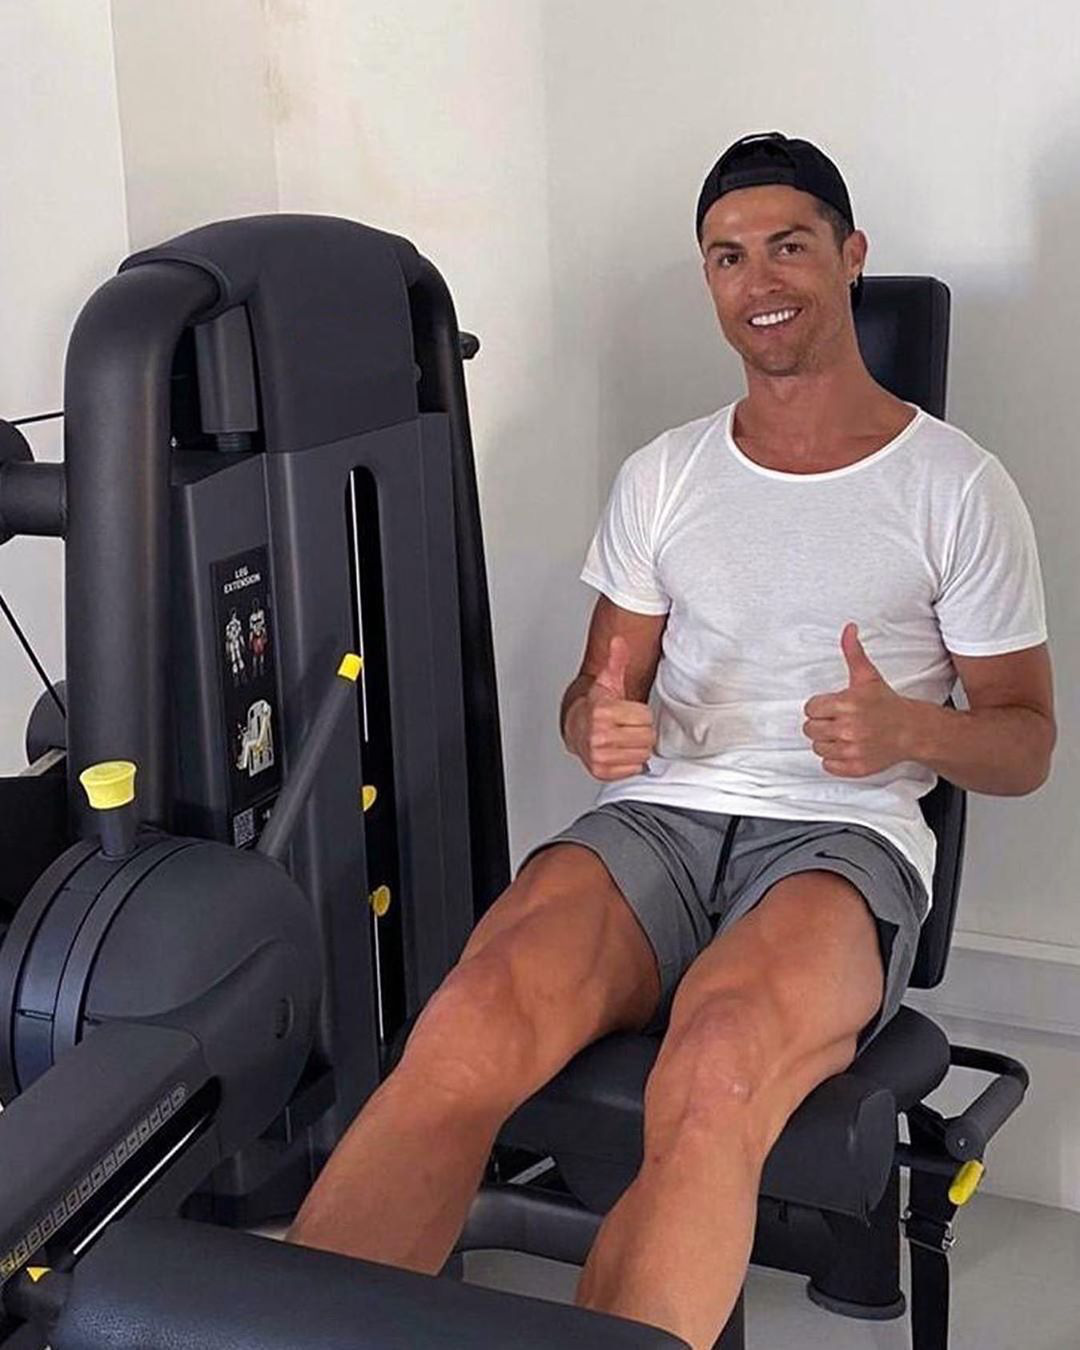 Ronaldo bị cựu chủ tịch Juve coi là hình tượng xấu khiến đồng đội đua đòi: Cậu ta nói về Bồ Đào Nha vì mẹ ốm mà suốt ngày chụp ảnh bên bể bơi! - Ảnh 1.